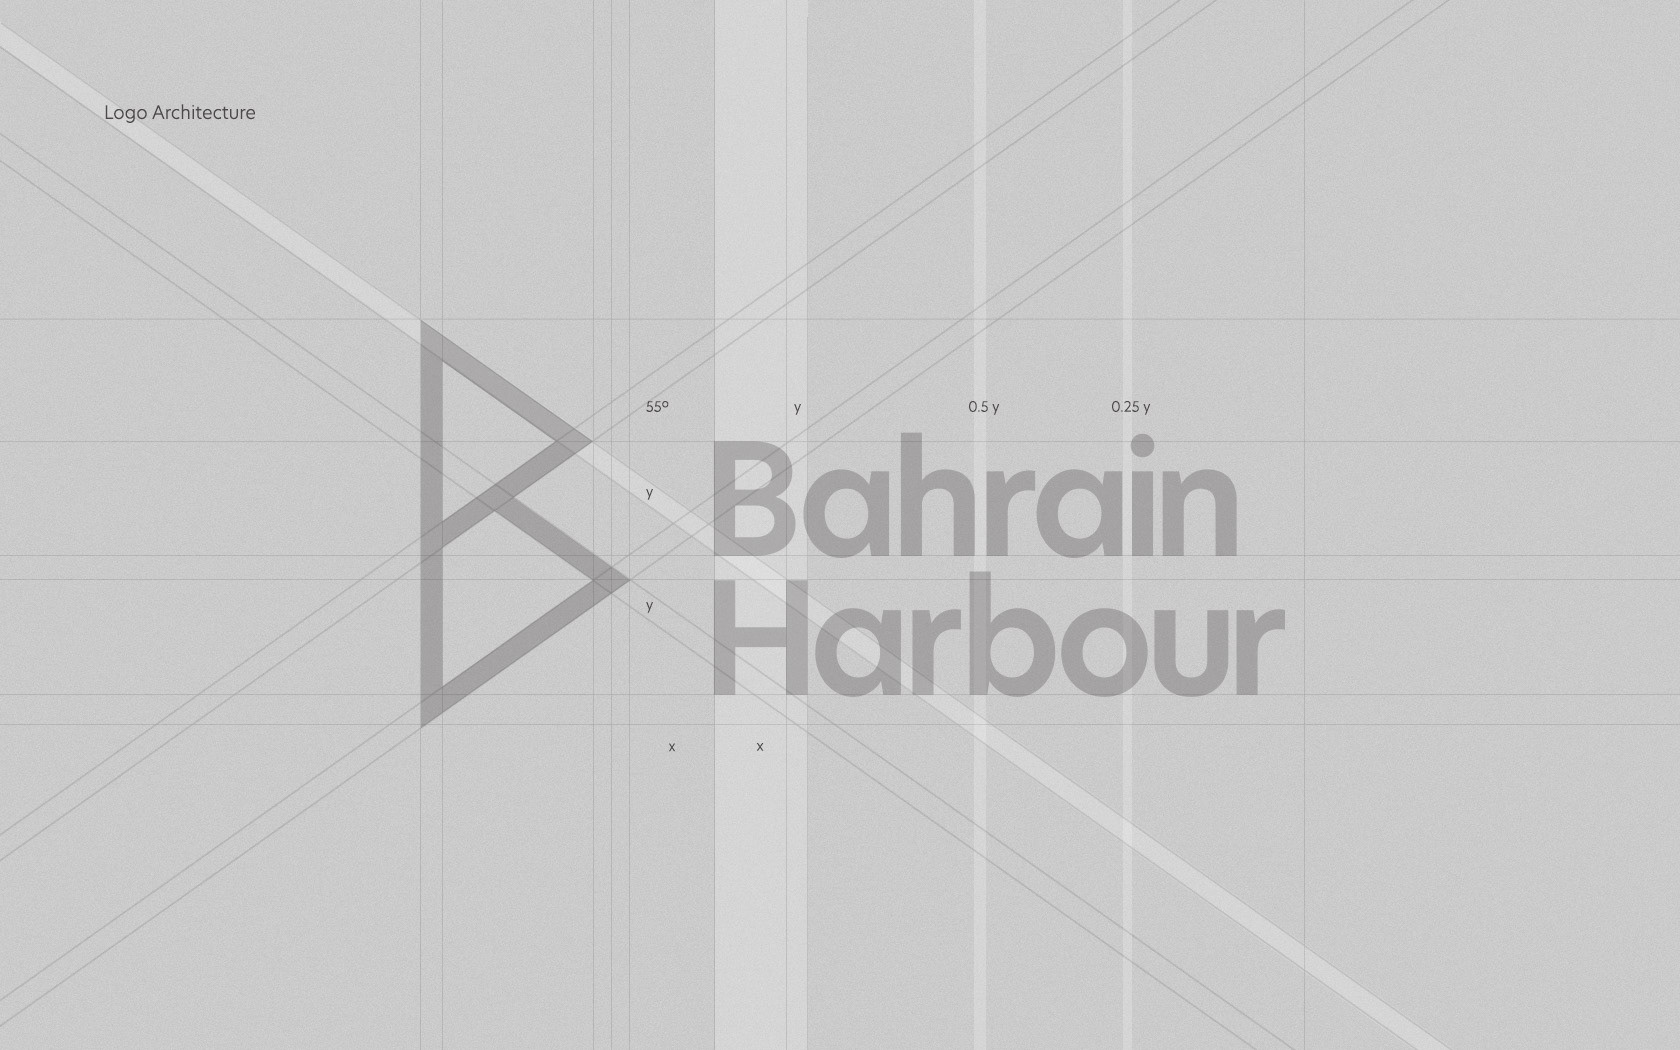 Bahrain Harbour logo architecture